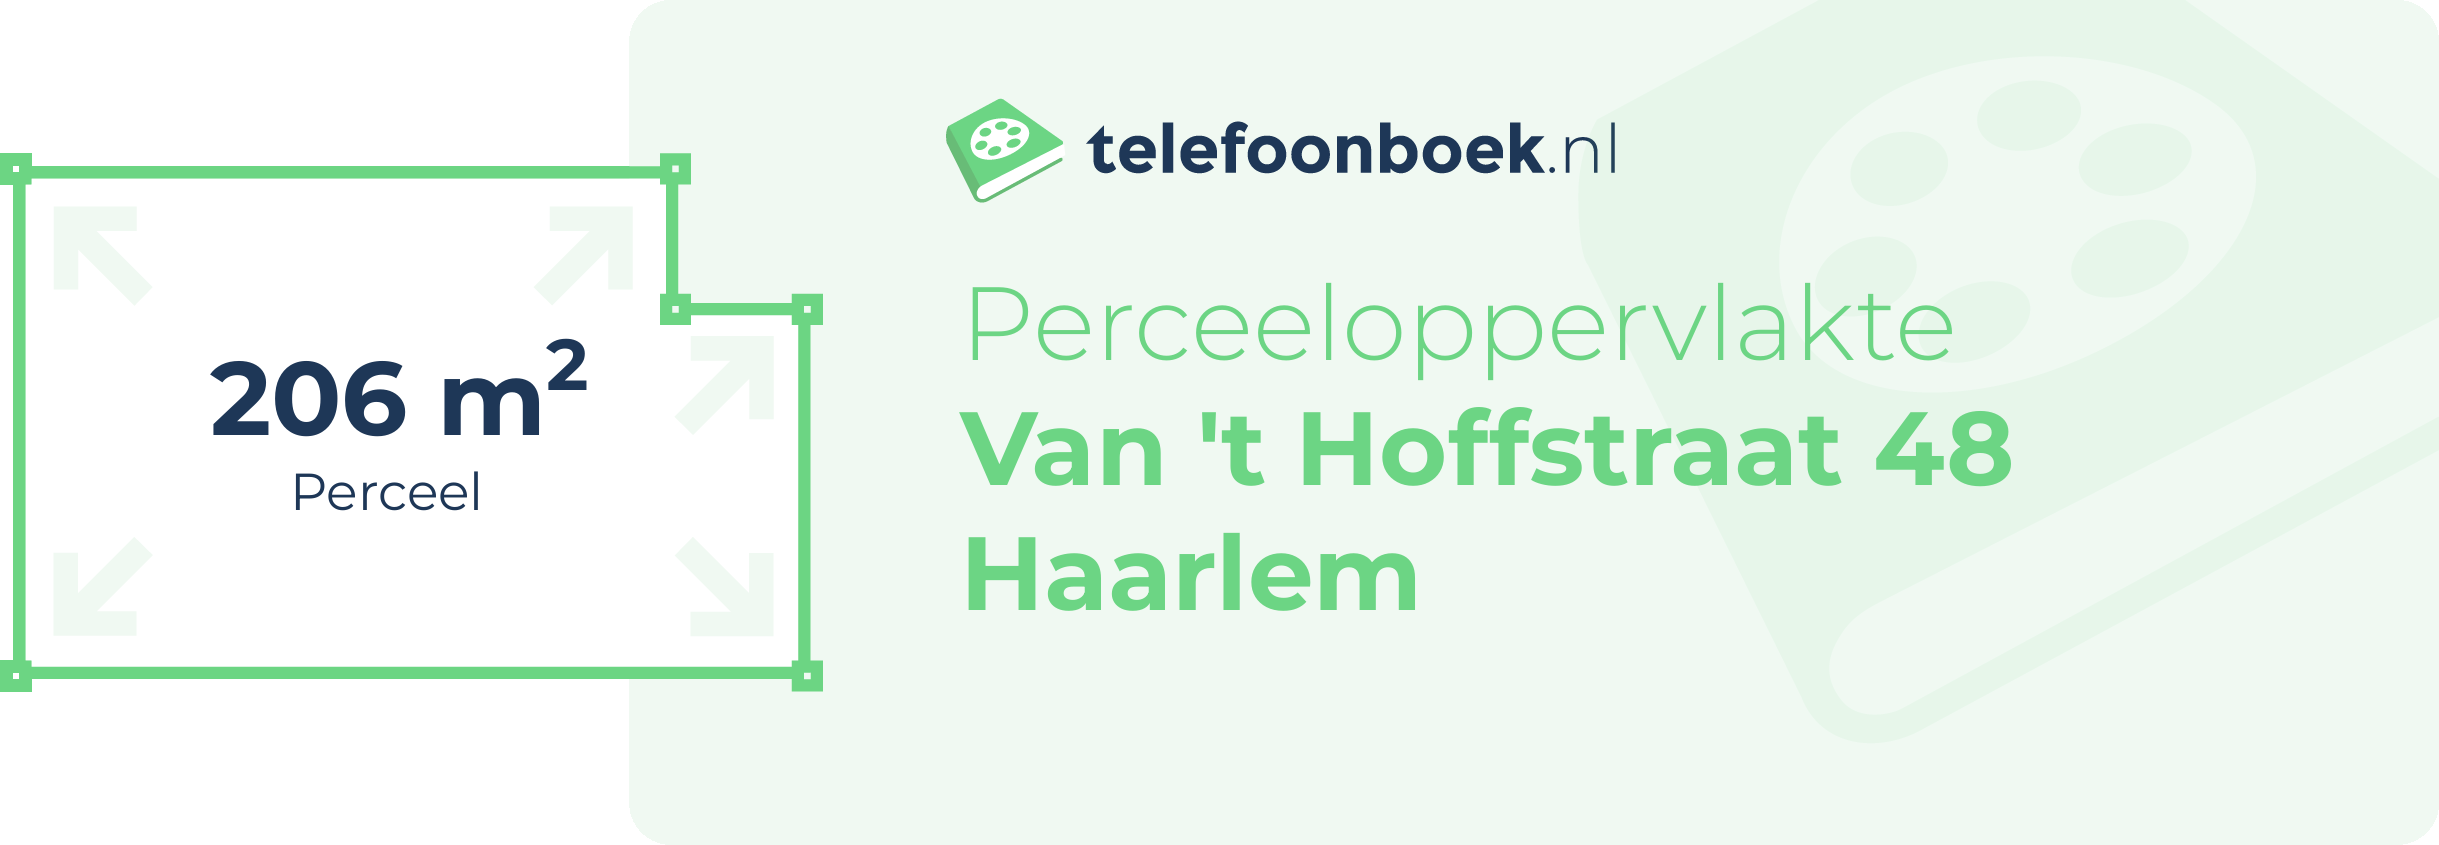 Perceeloppervlakte Van 't Hoffstraat 48 Haarlem